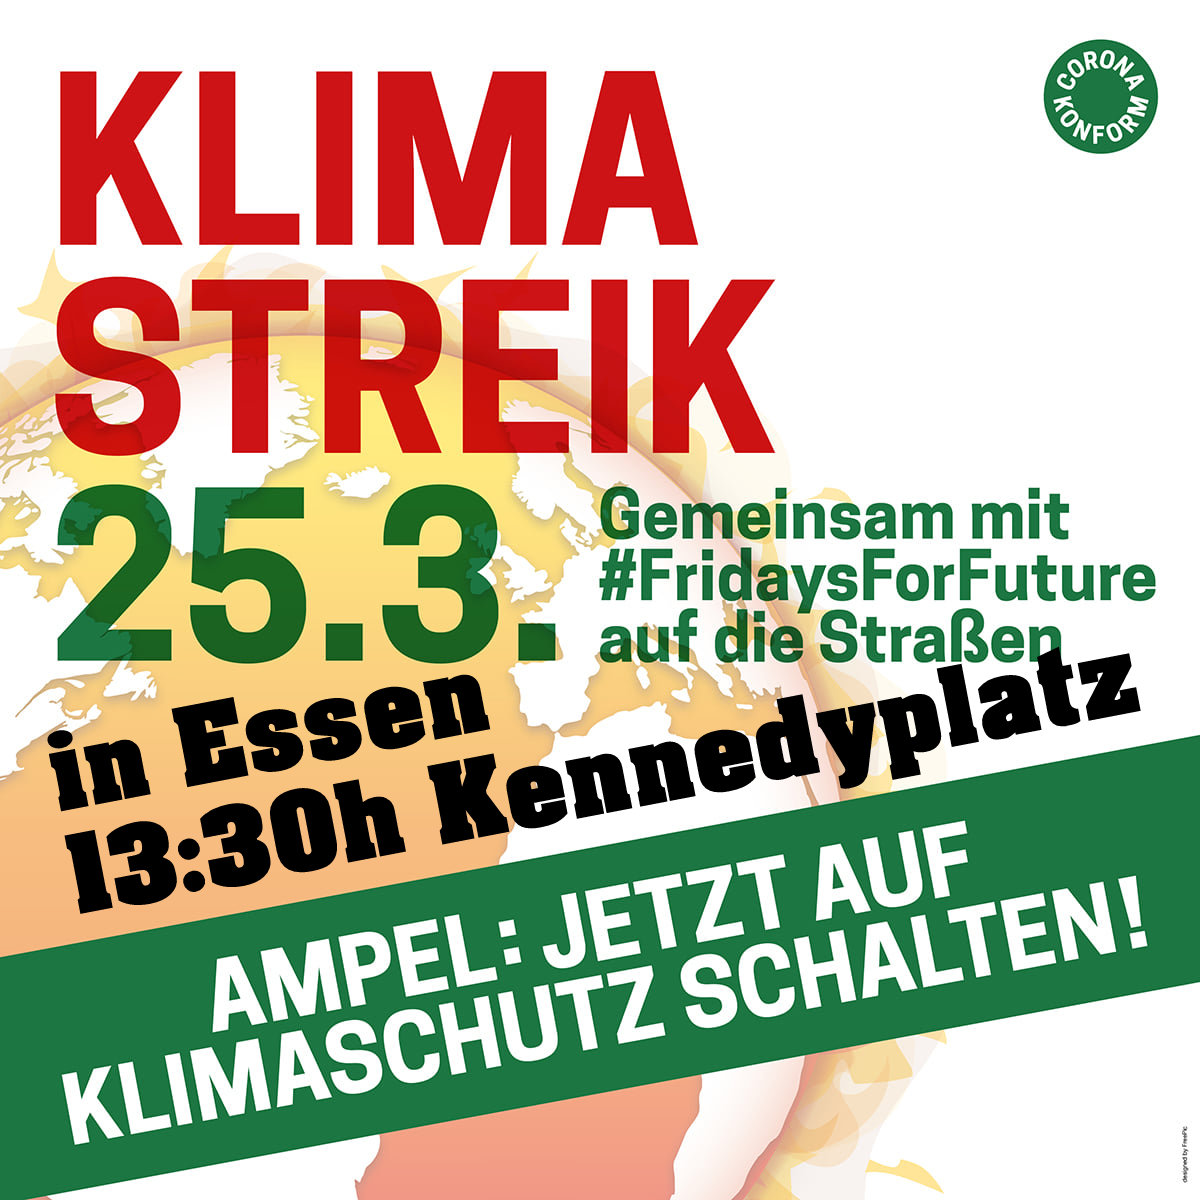 KLIMA-STREIK in Essen am Freitag 25.3. um 13:30h Kennedyplatz